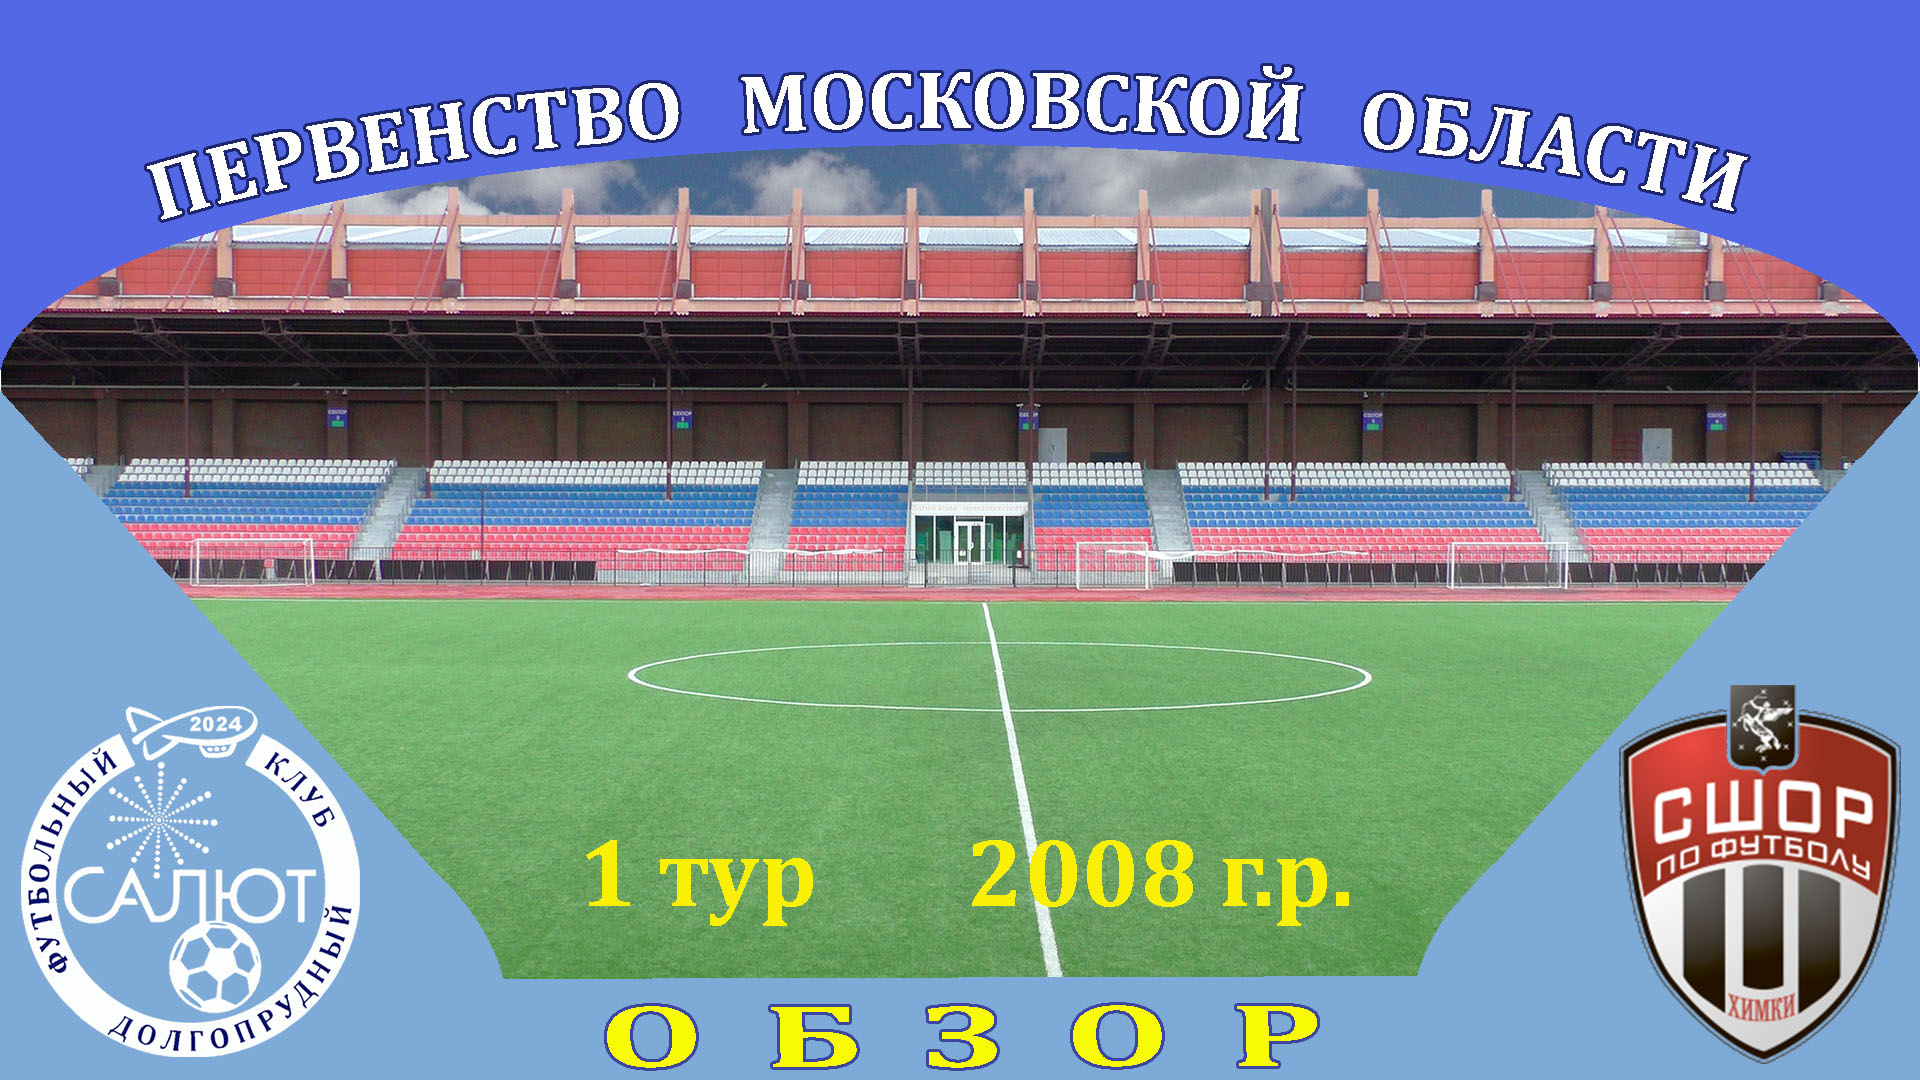 Обзор игры  ФСК Салют 2008   12-0   СШОР Сходня